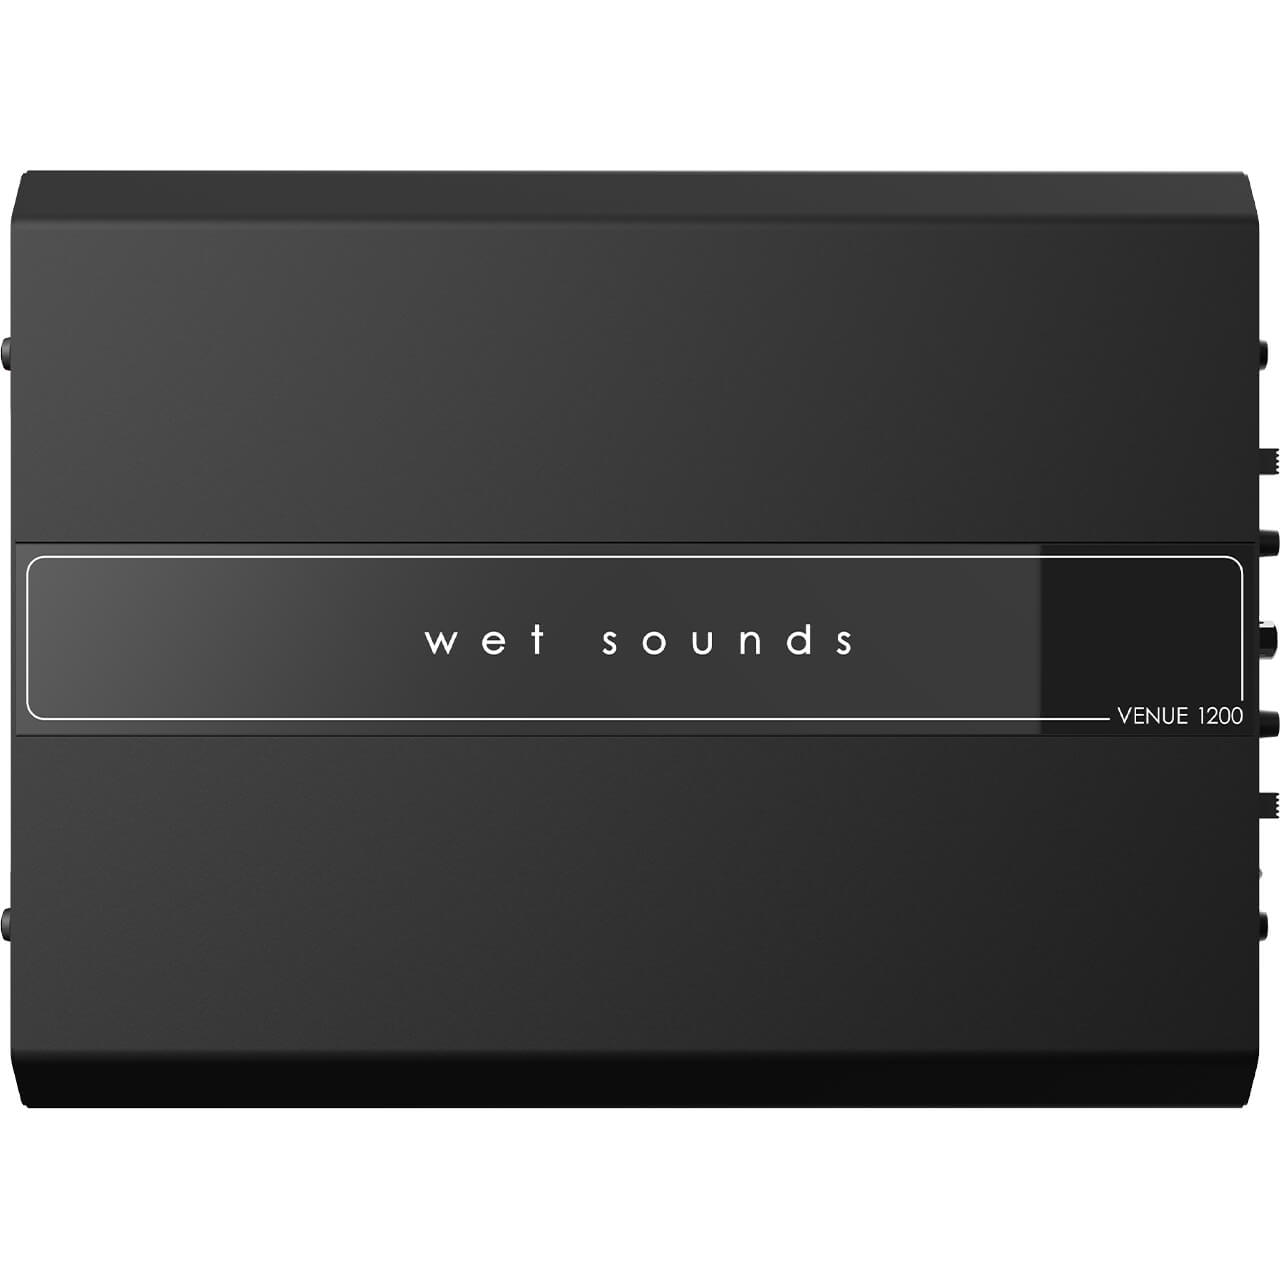 Amplificador de 4 canales con gabinete Wet Sounds VS-AMPLIFIER SYSTEM-4 110v, 1200W Venue Series